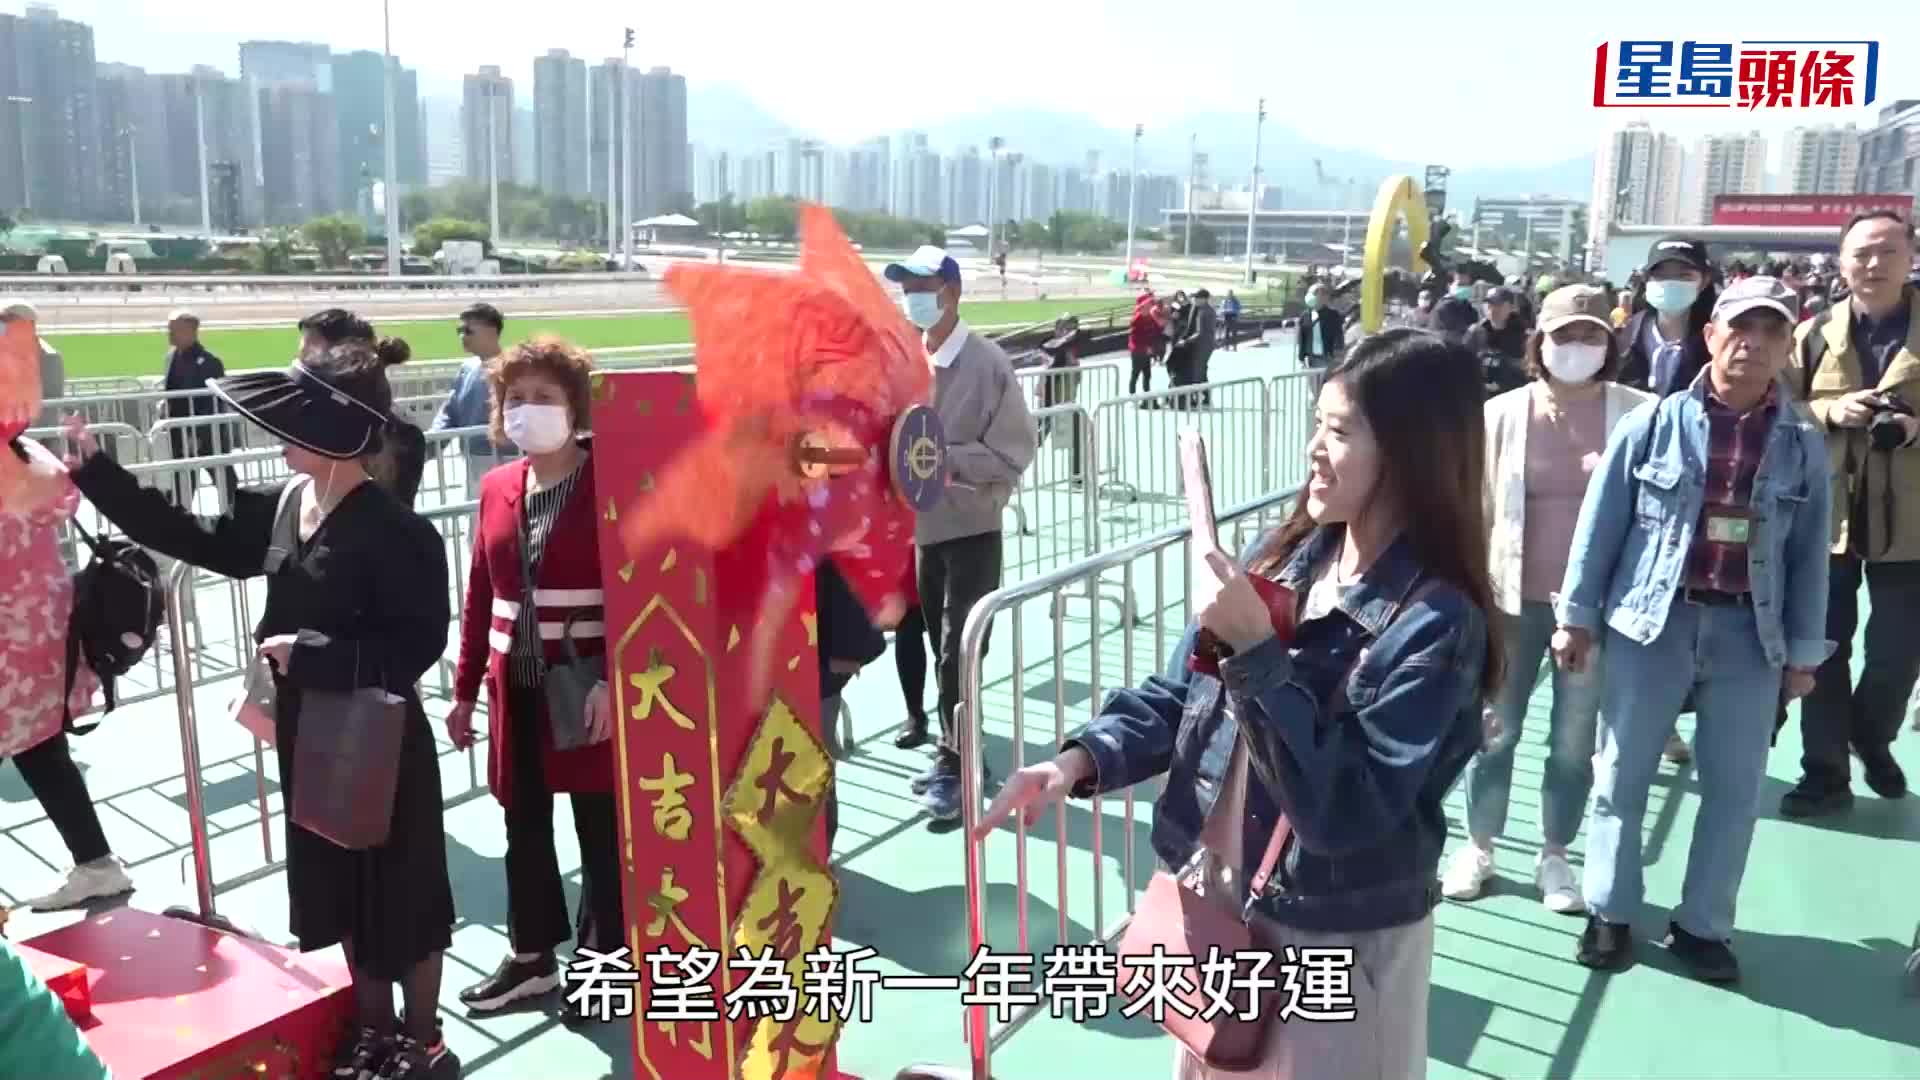 年初三︱沙田馬場上演新春「賀年馬」 陳茂波主禮 旅客讚香港過年氣氛濃厚